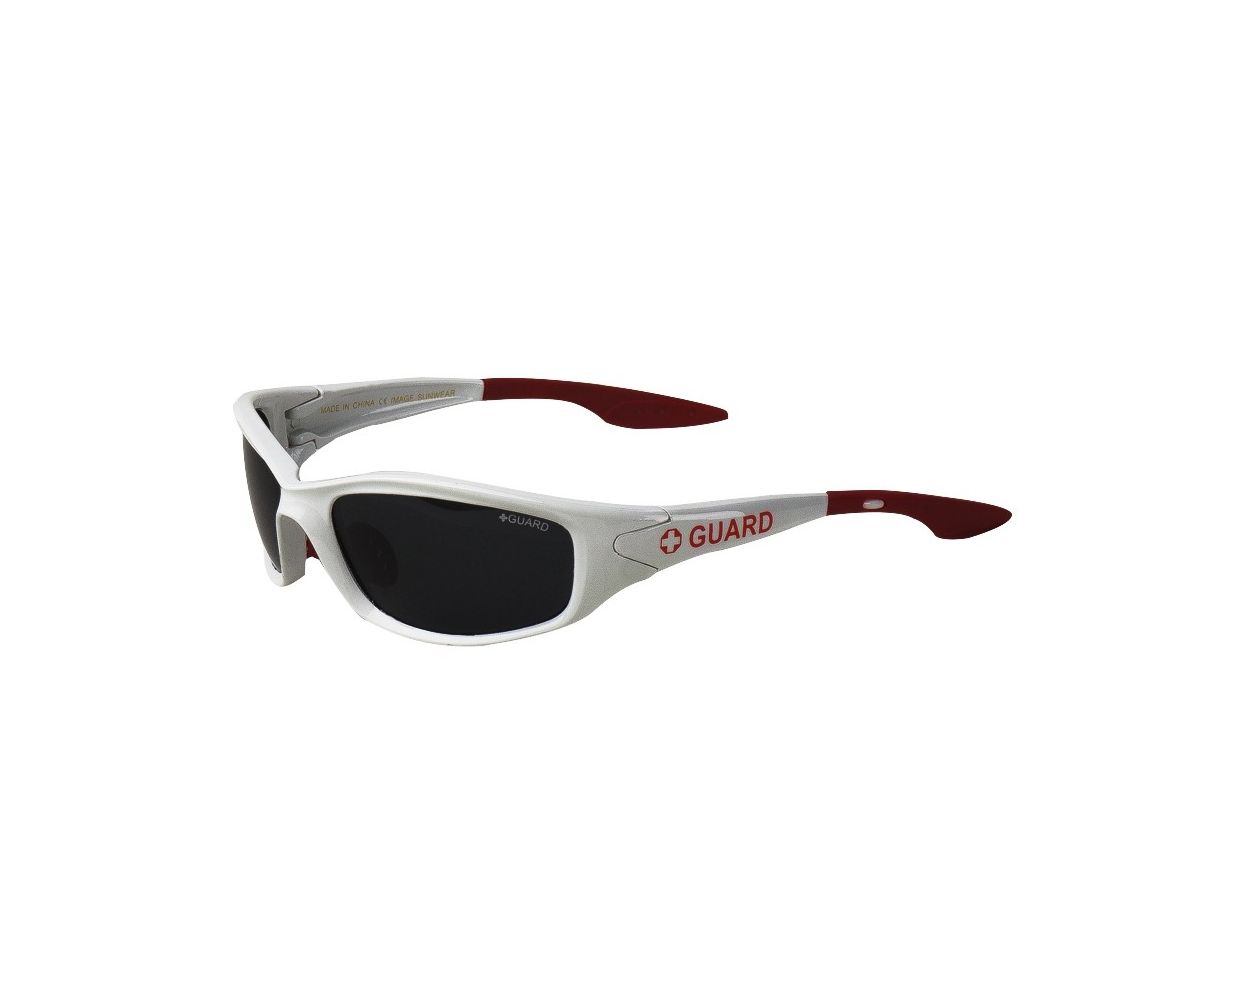 Lifeguard Sunglasses- Polarized Guard Sunglasses